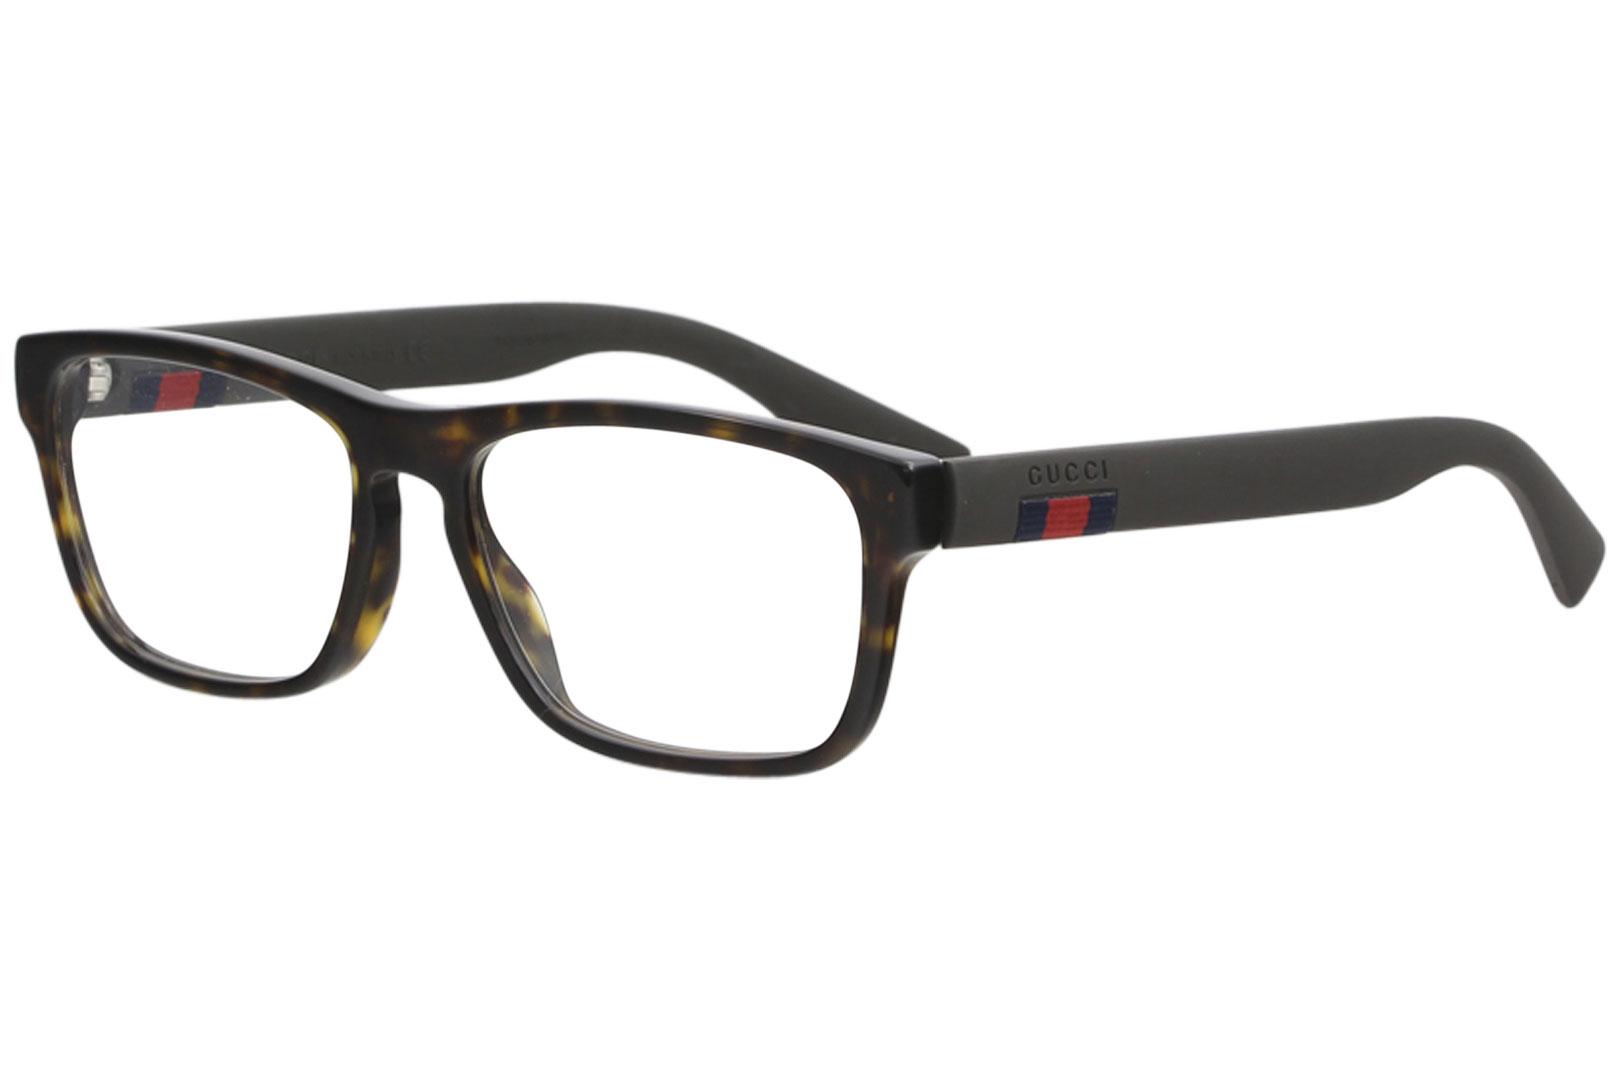 Gucci Men's Eyeglasses GG0174O GG/0174/O Full Rim Optical Frame - Havana/Brown   006 - Lens 56 Bridge 17 Temple 145mm